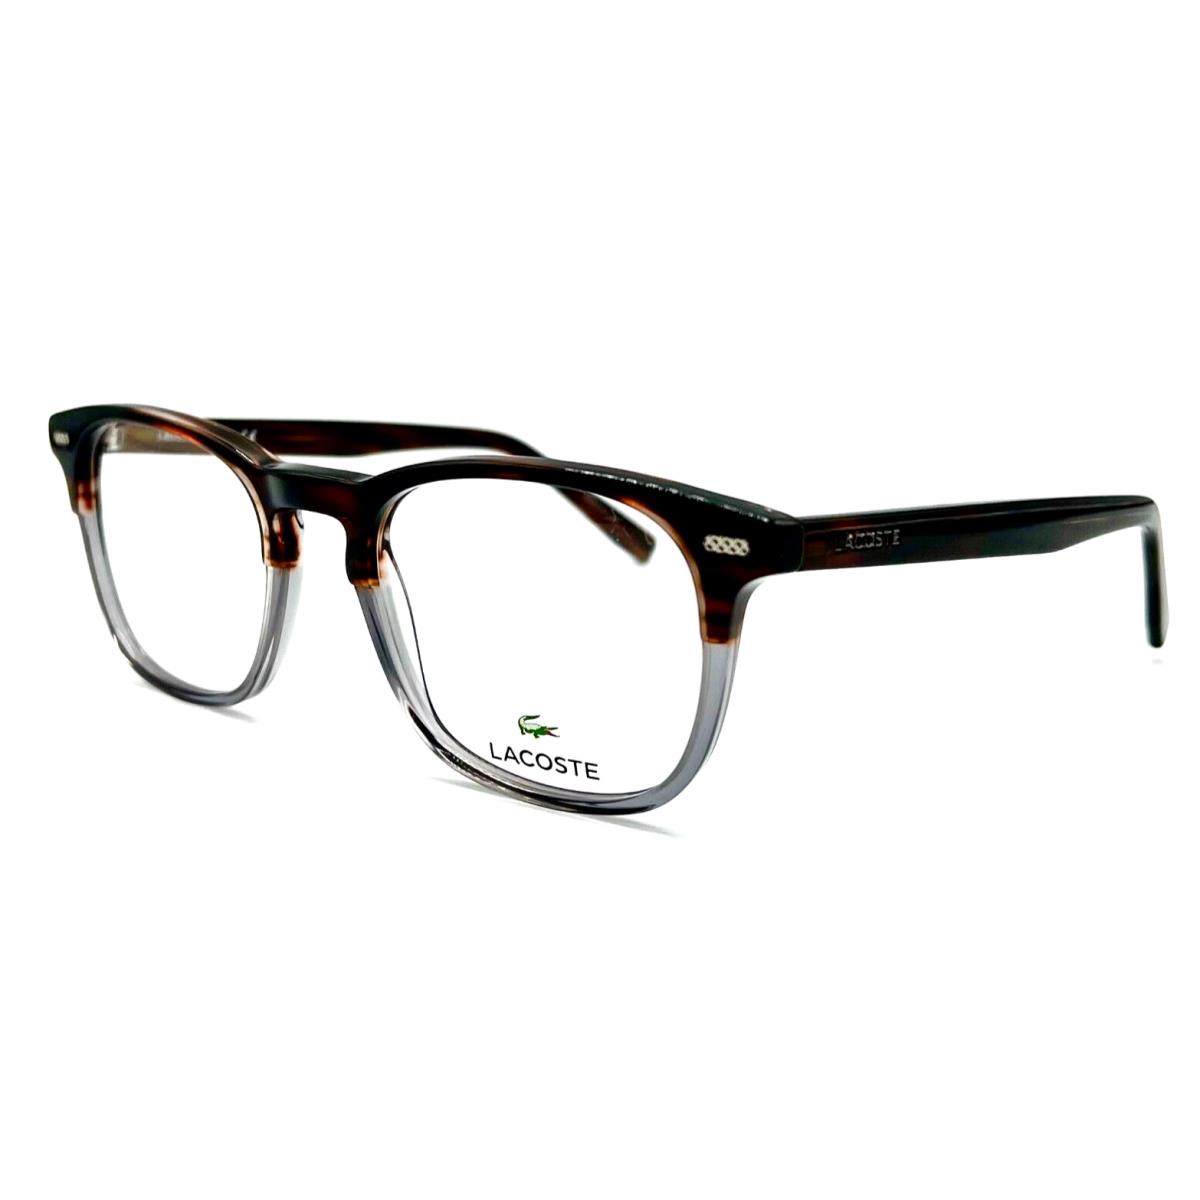 Lacoste - L2832 210 48/20/140 - Brown Grey - Men Eyeglasses Frame